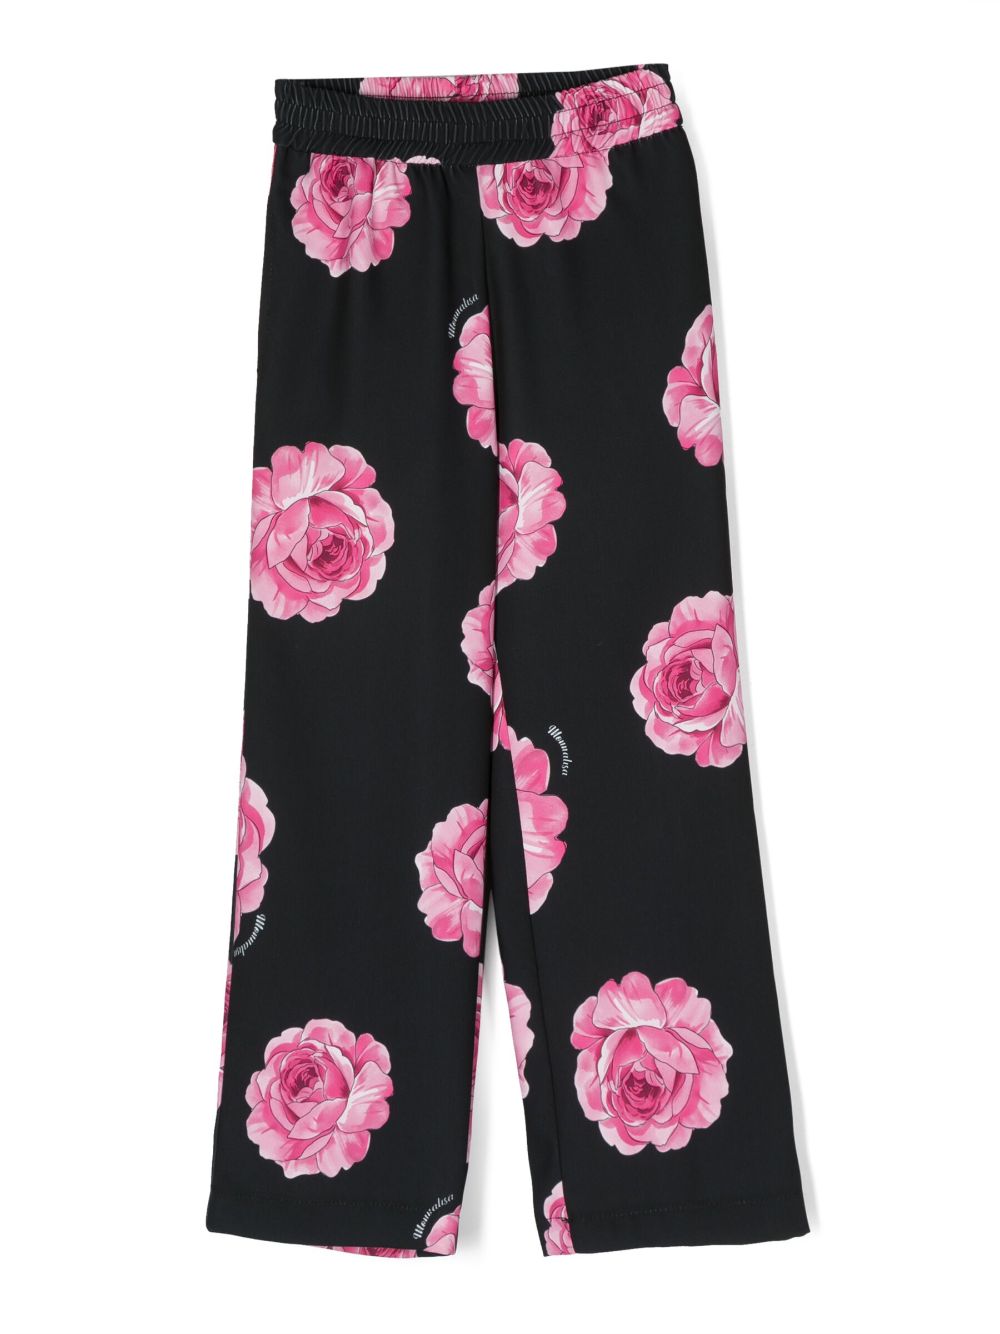 Pantalone nero per bambina con rose